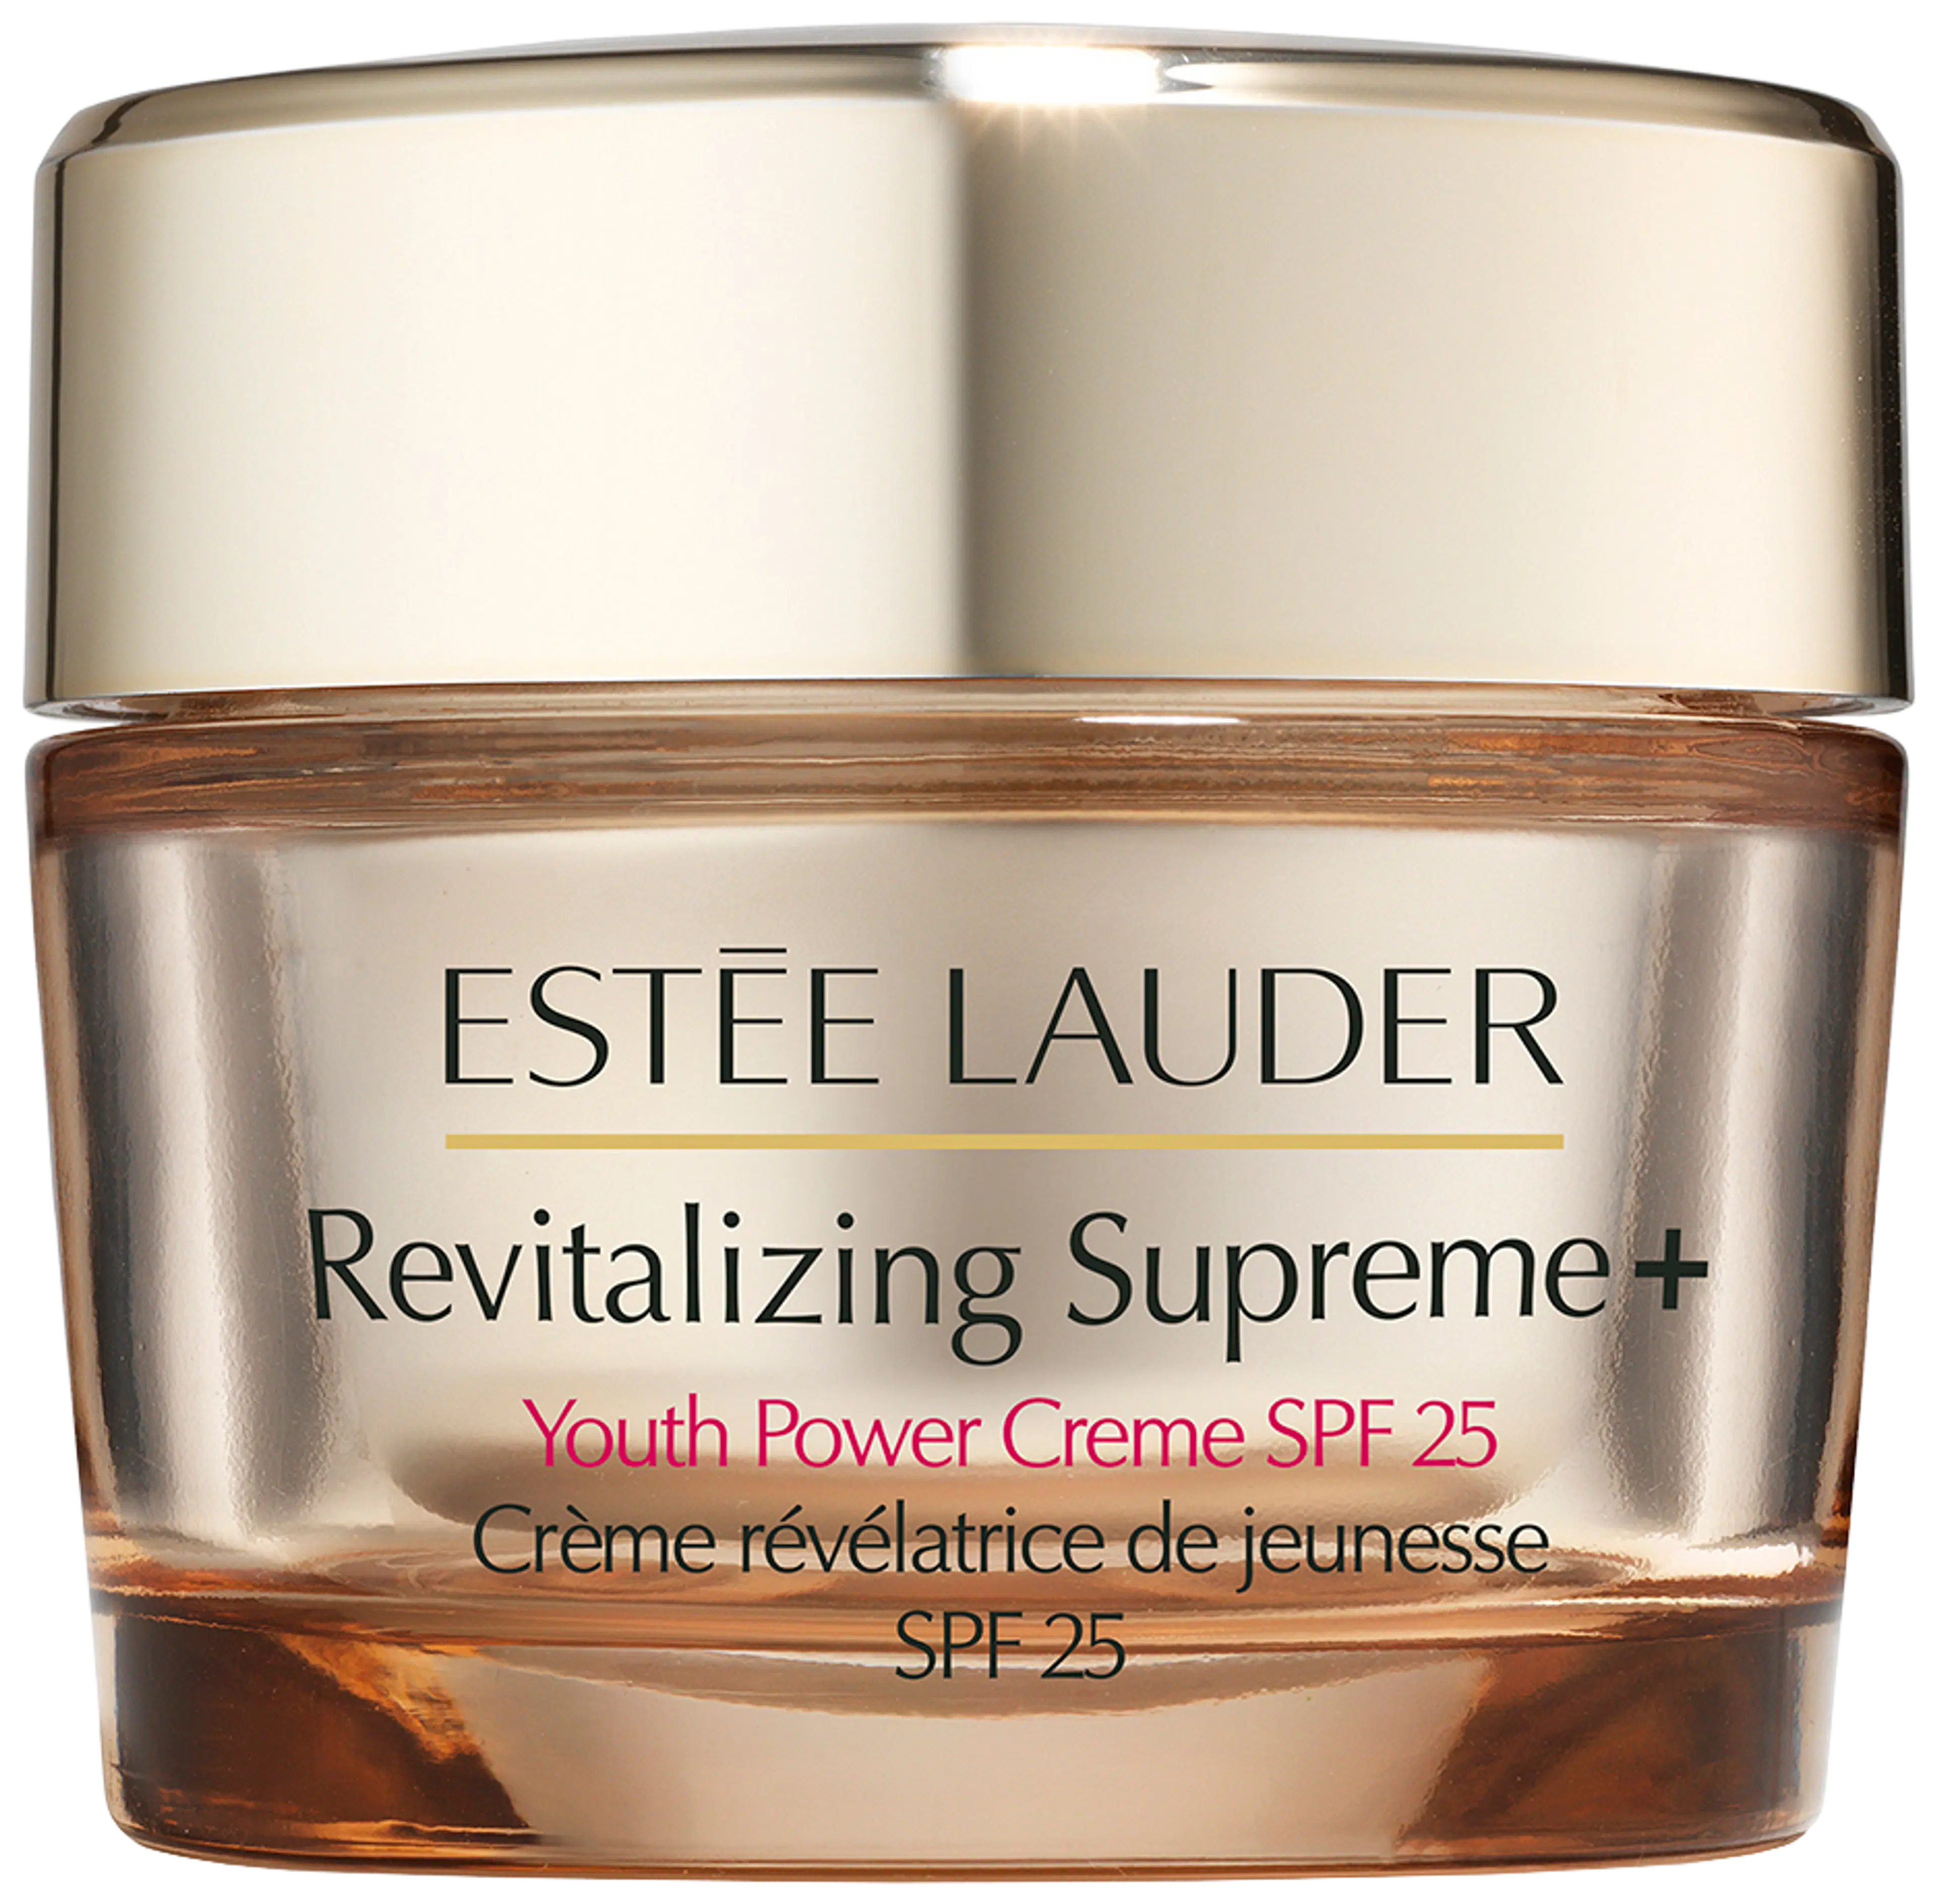 Estée Lauder Revitalizing Supreme+ Youth Power Creme SPF 25 päivävoide 50 ml